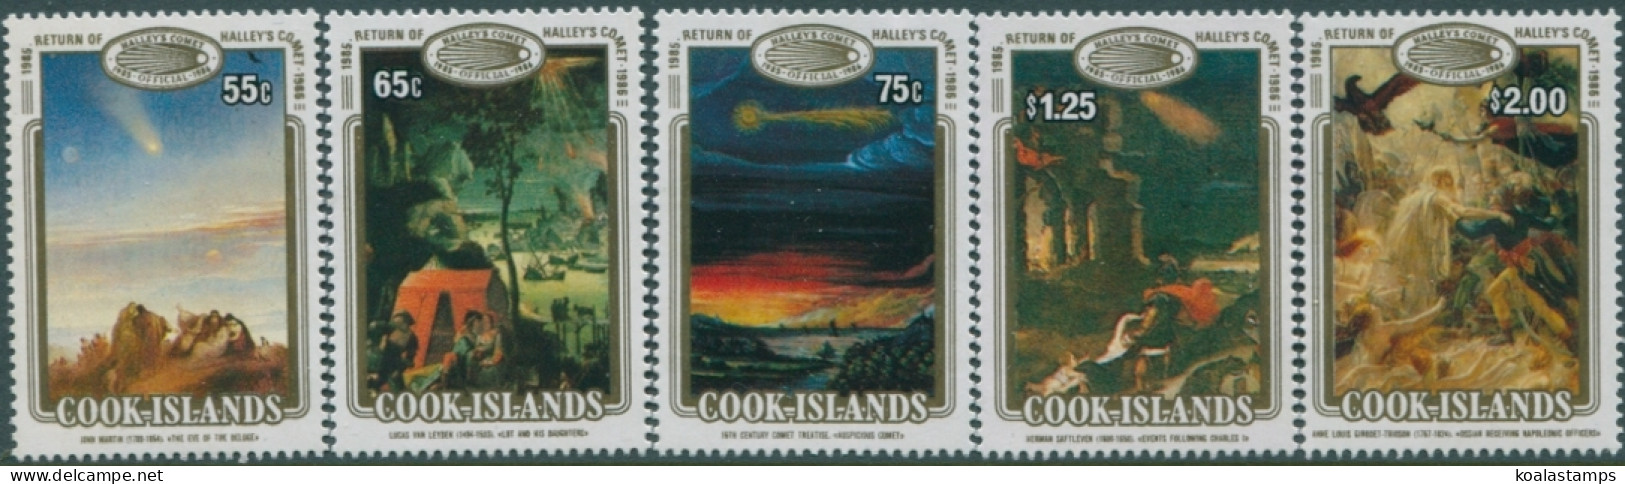 Cook Islands 1986 SG1058-1062 Halley's Comet Set MNH - Cook Islands